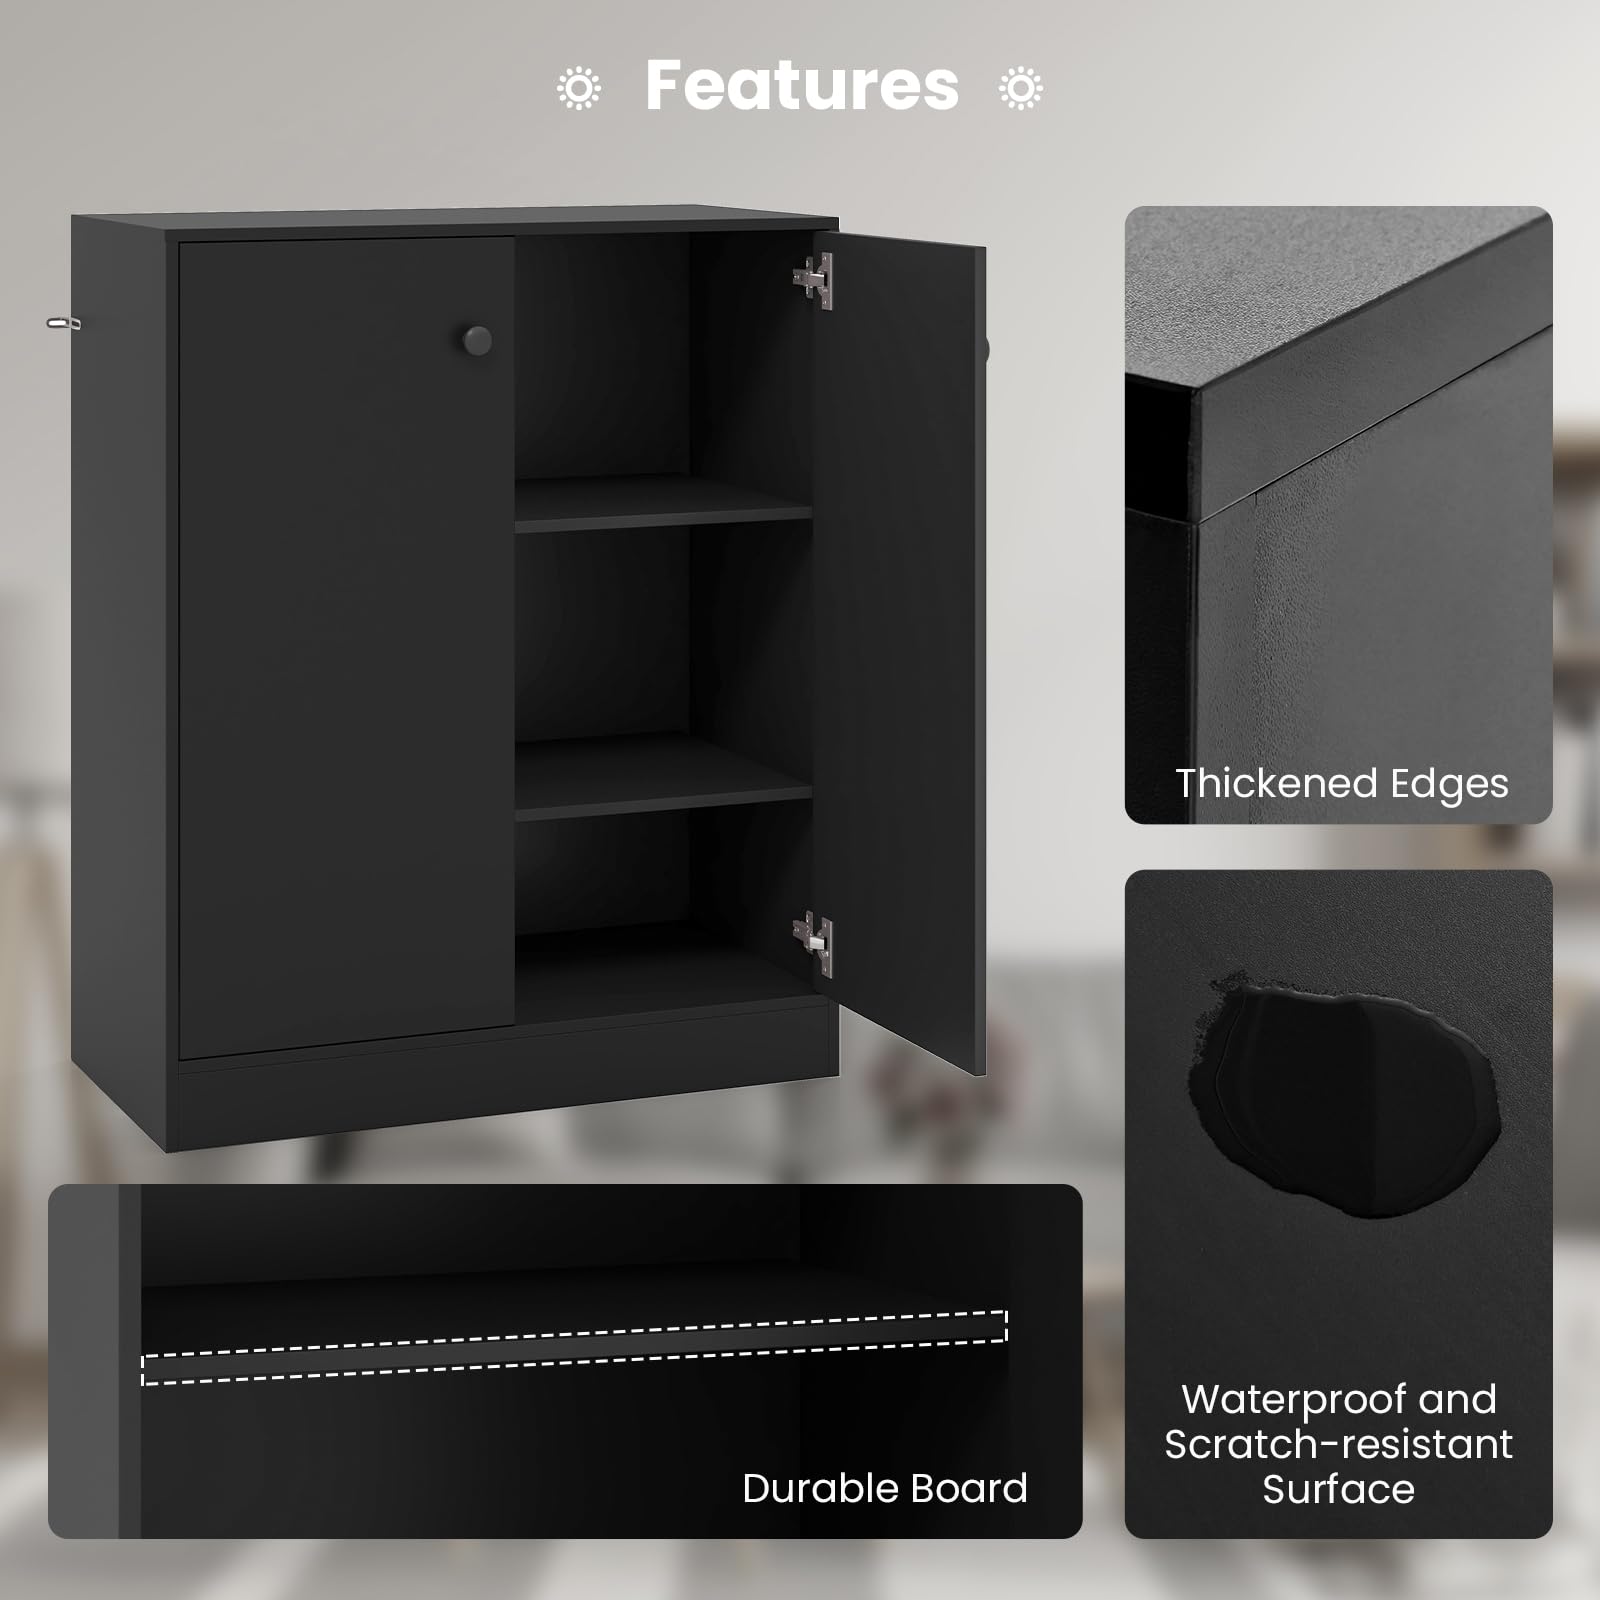 Giantex 2 Door Storage Base Cabinet - Freestanding Floor Cabinet with 3-Tier Shelf